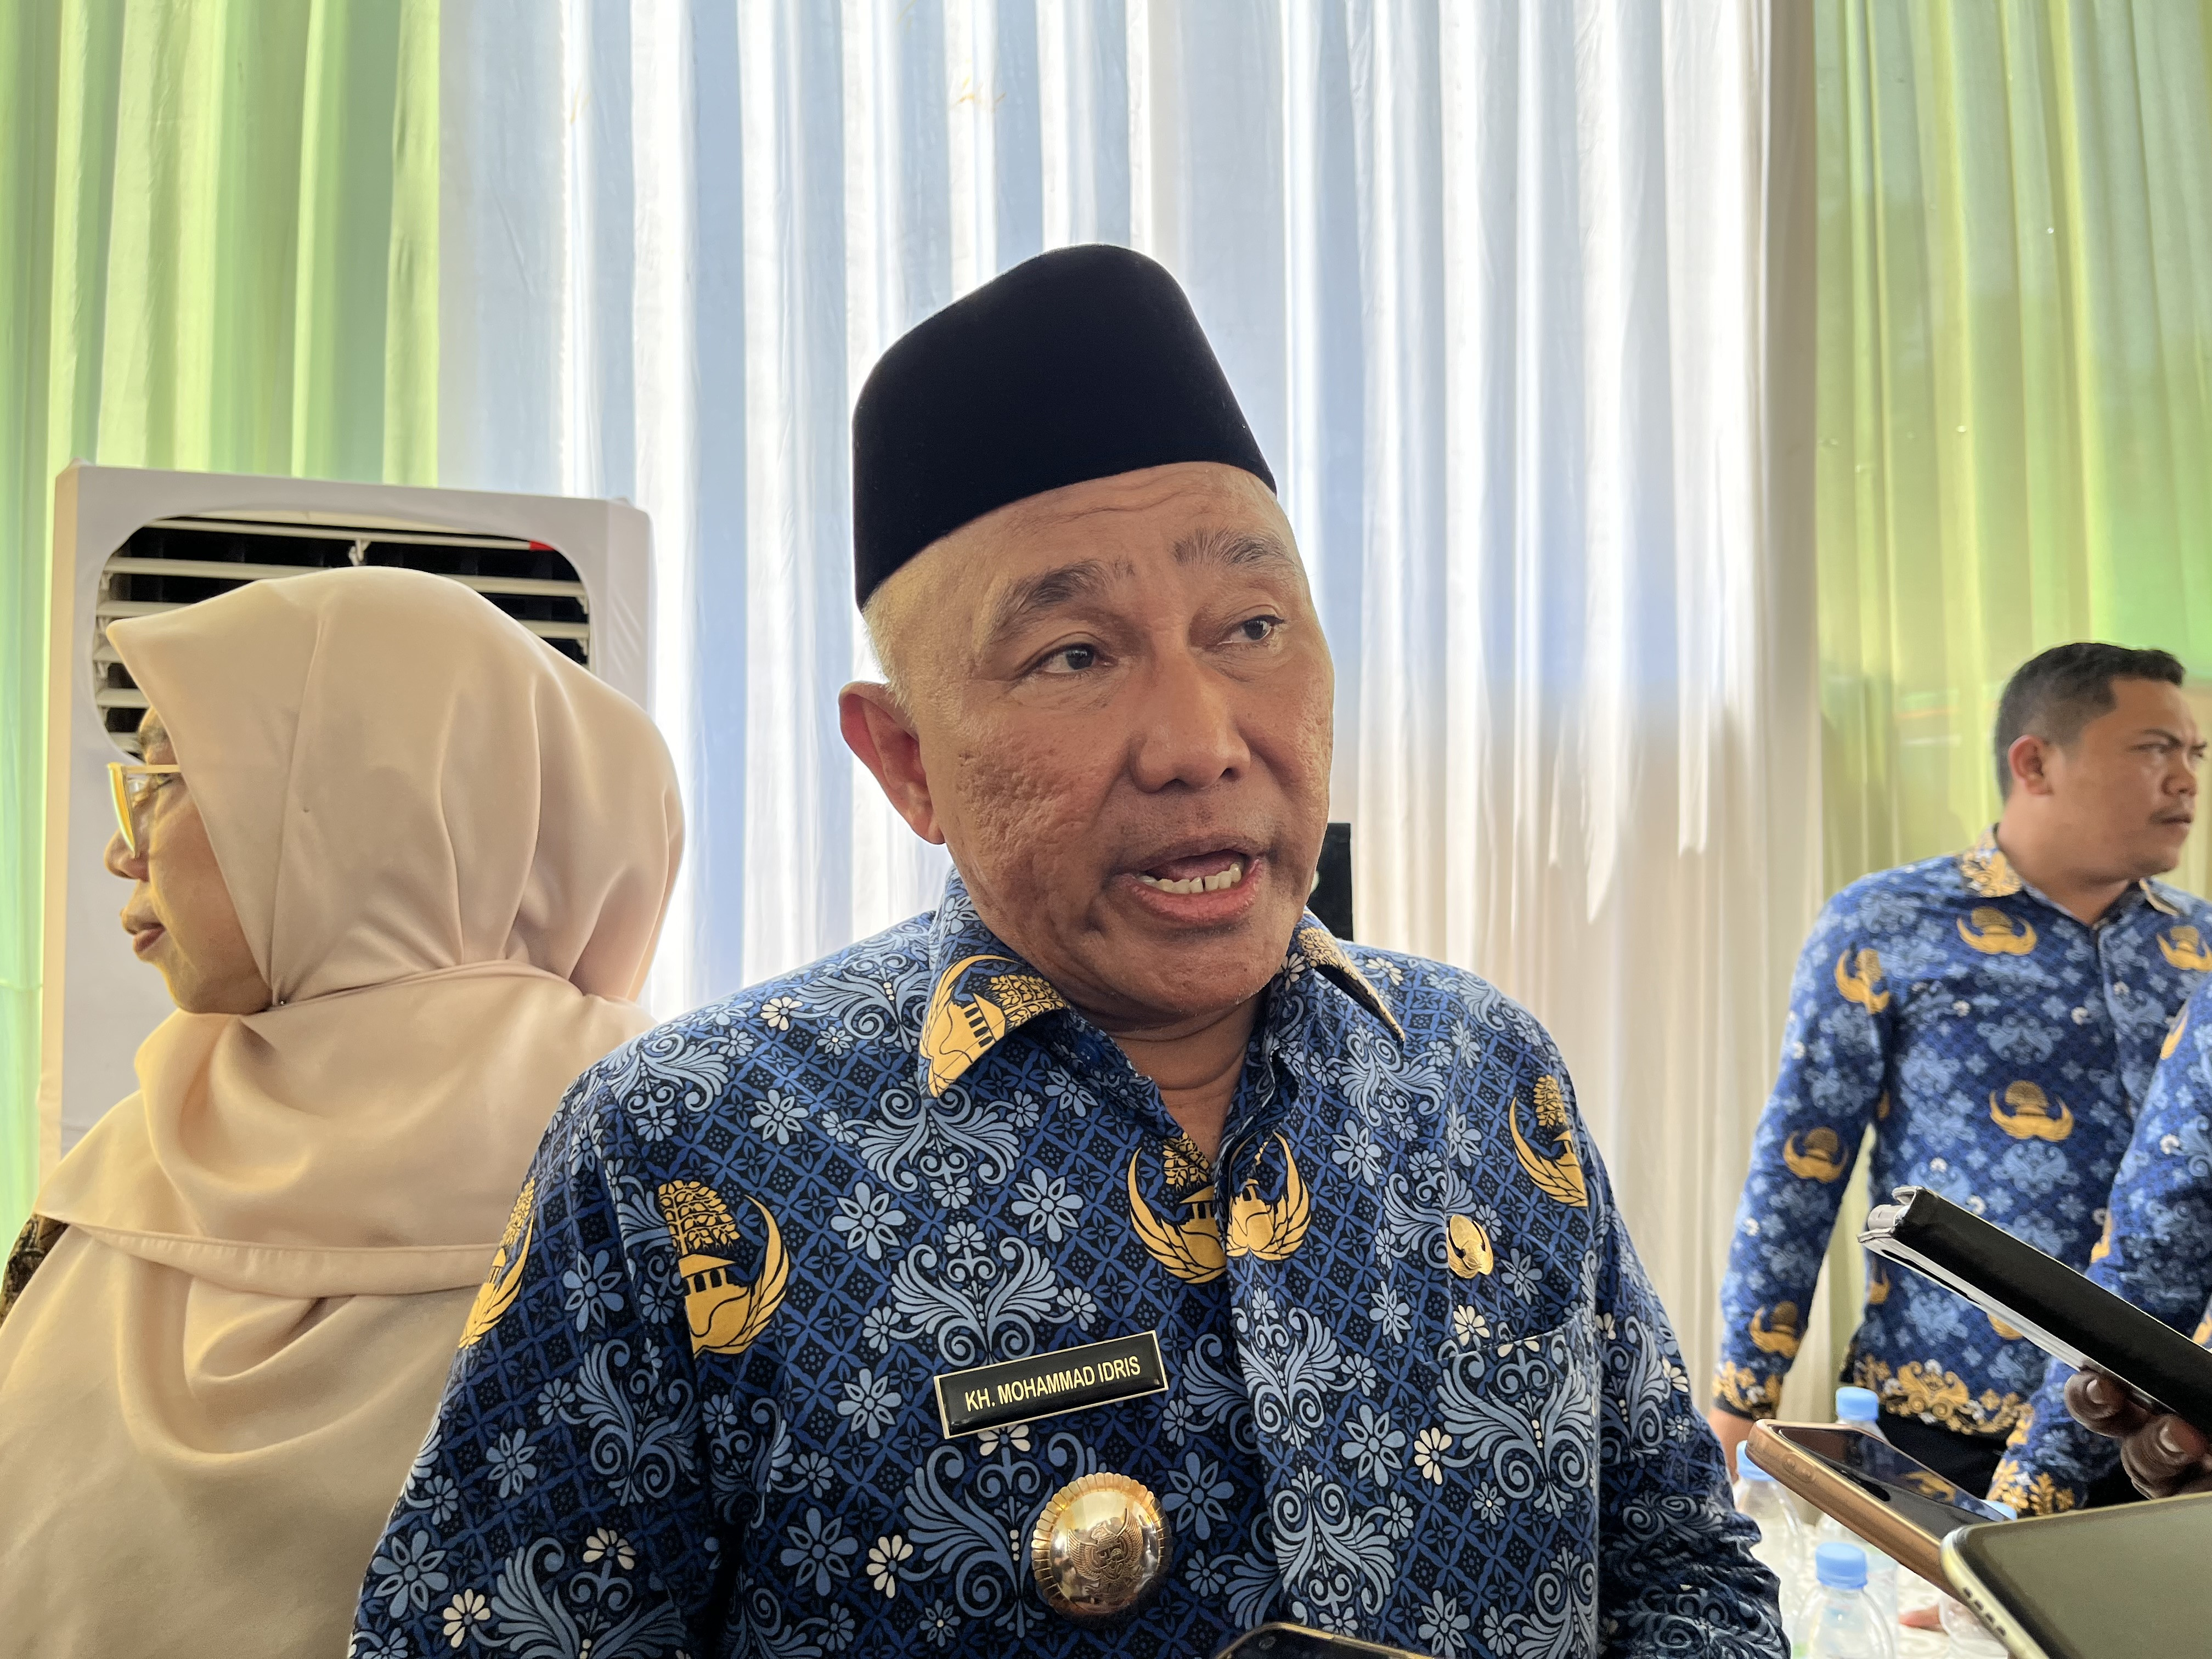 Jabat Ketua Dewan Pakar PKS Depok, Idris Akui Tak Punya Kewenangan untuk Menentukan Pilihan - JPNN.com Jabar